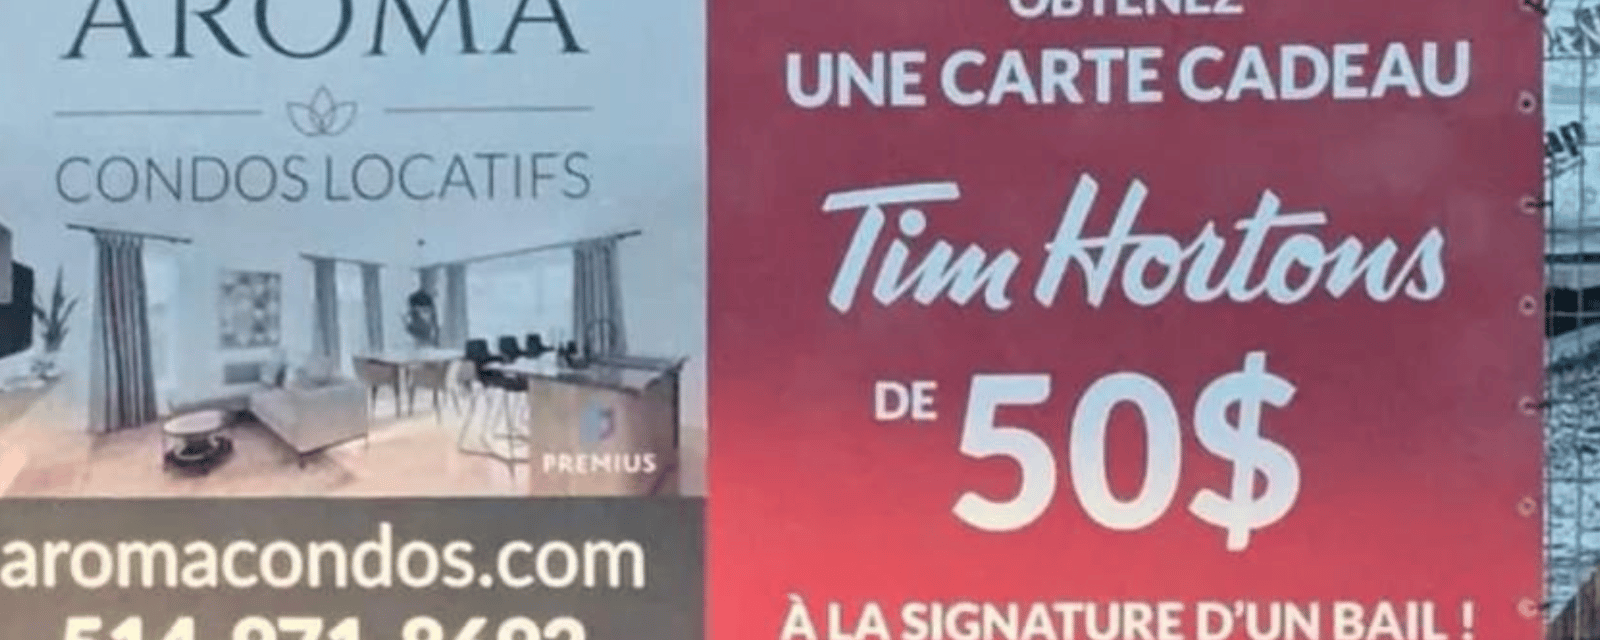 Un promoteur offre une carte cadeau de 50$ du Tim Horton's pour signer un bail allant jusqu'à 2 275 $